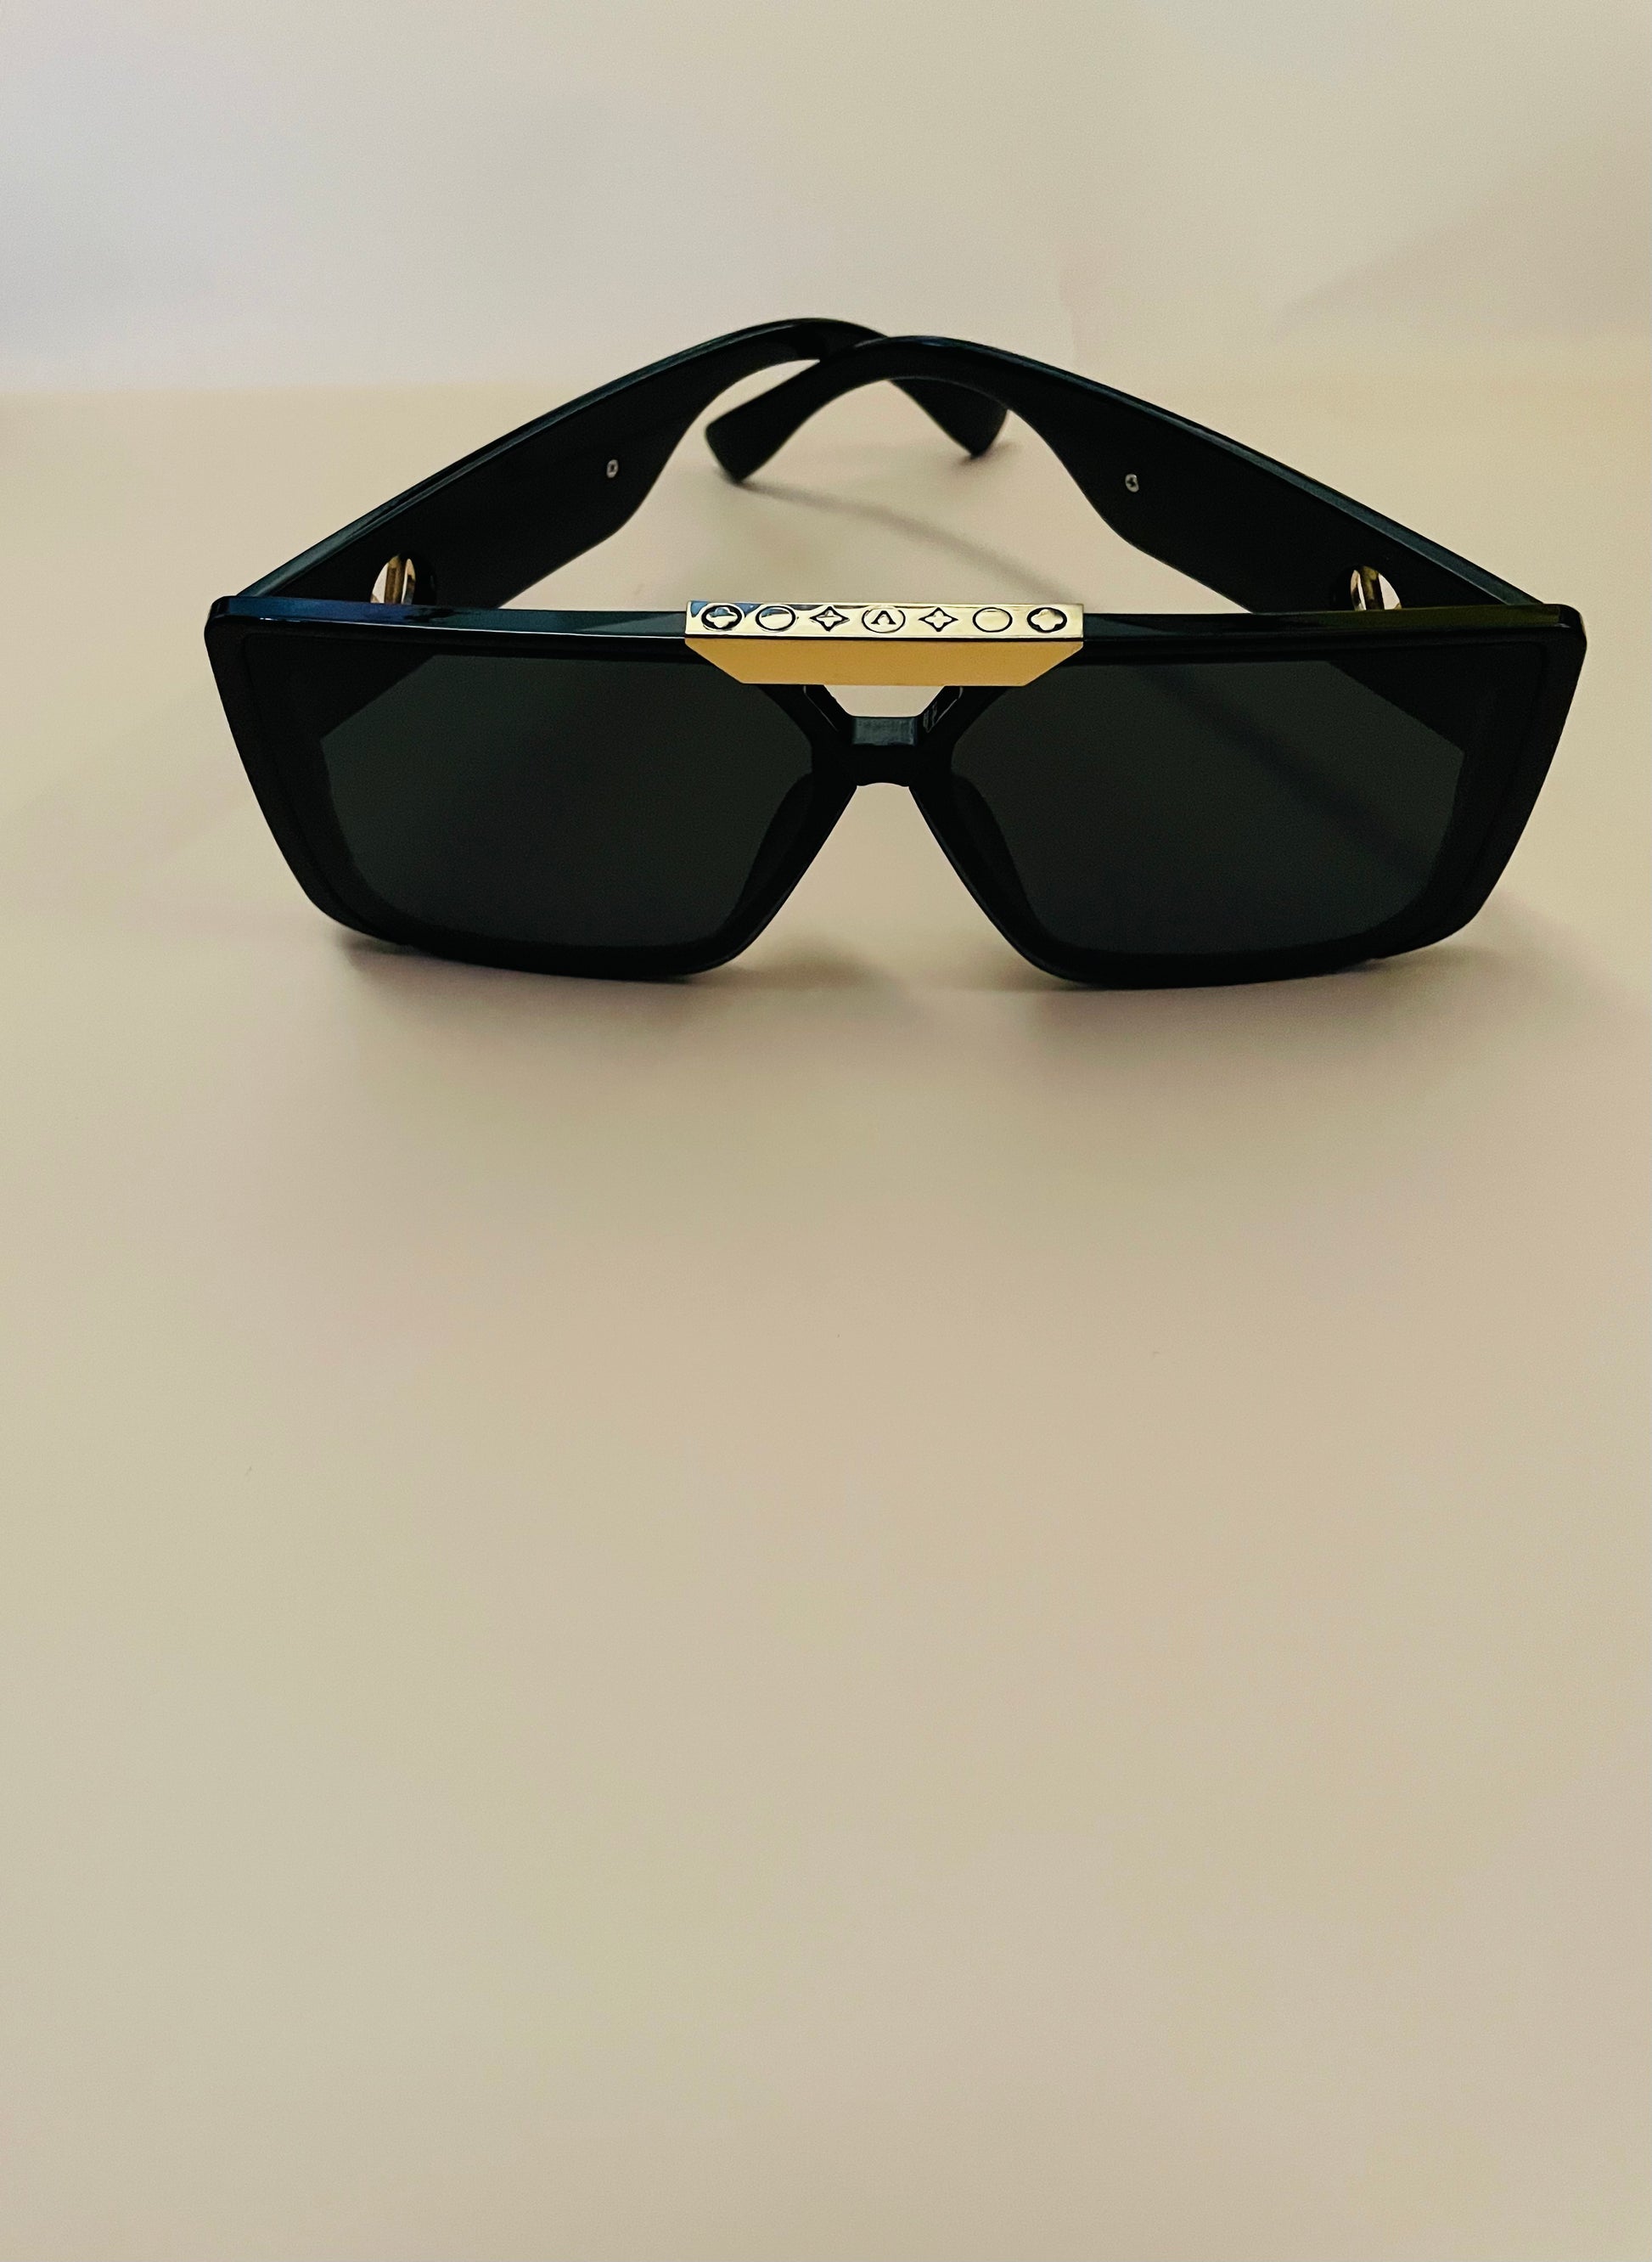 miami sunglasses luxury sunglasses for women leopard sunglasses quality sunglasses light sunglasses cute sunglasses